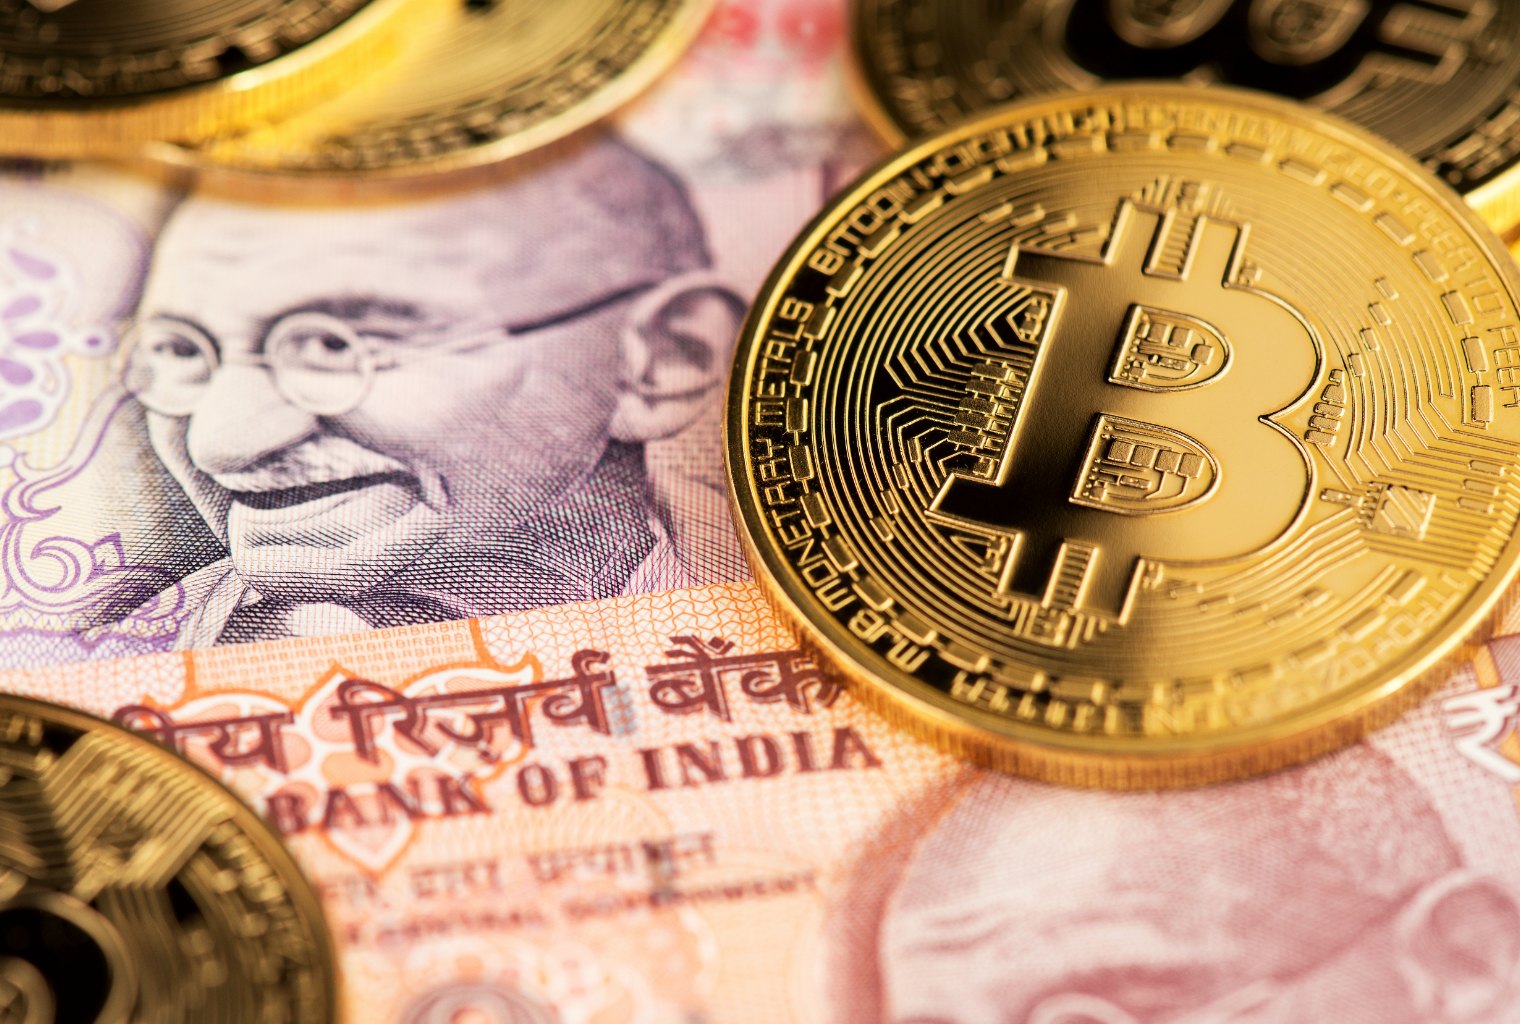 Convert bitcoin to cash india send bitcoin cash ledger nano s